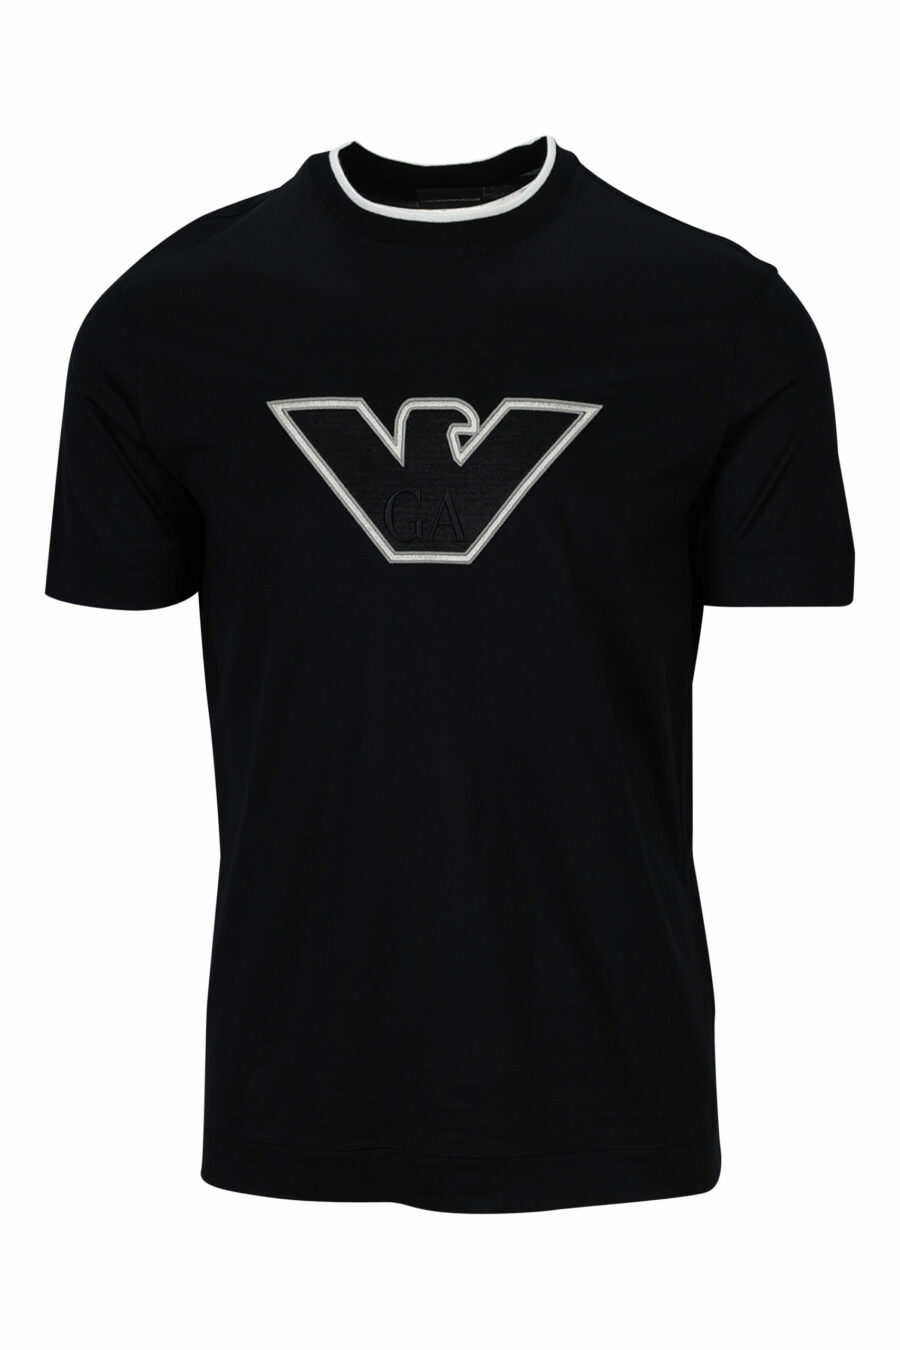 Schwarzes T-Shirt mit weißem Adler Maxilogo umrandet - 8057767554040 skaliert